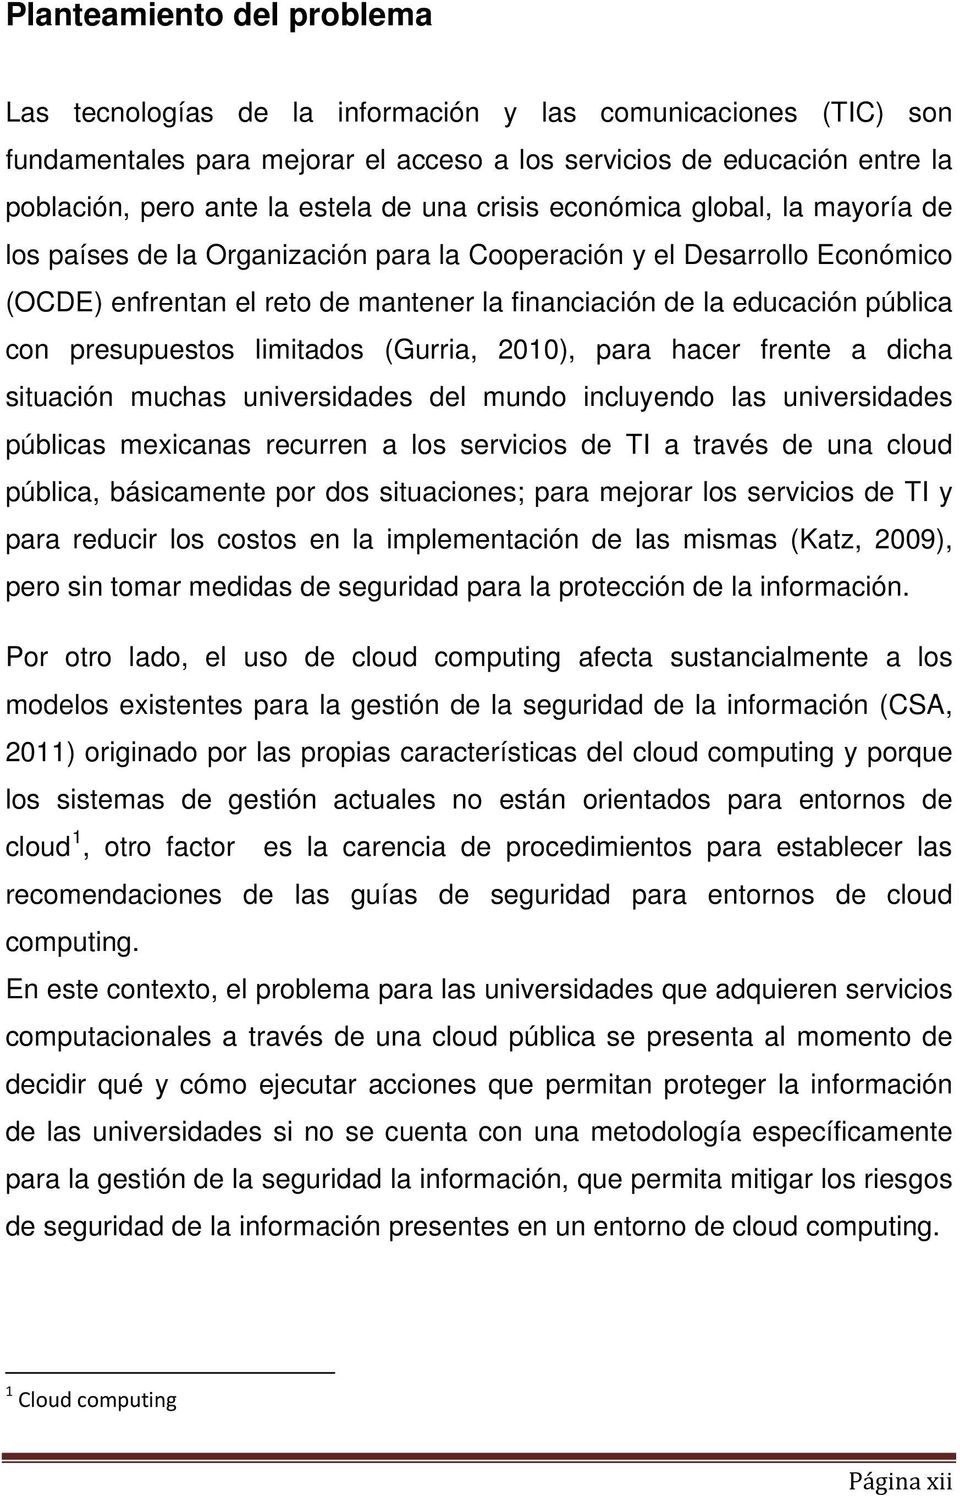 con presupuestos limitados (Gurria, 2010), para hacer frente a dicha situación muchas universidades del mundo incluyendo las universidades públicas mexicanas recurren a los servicios de TI a través